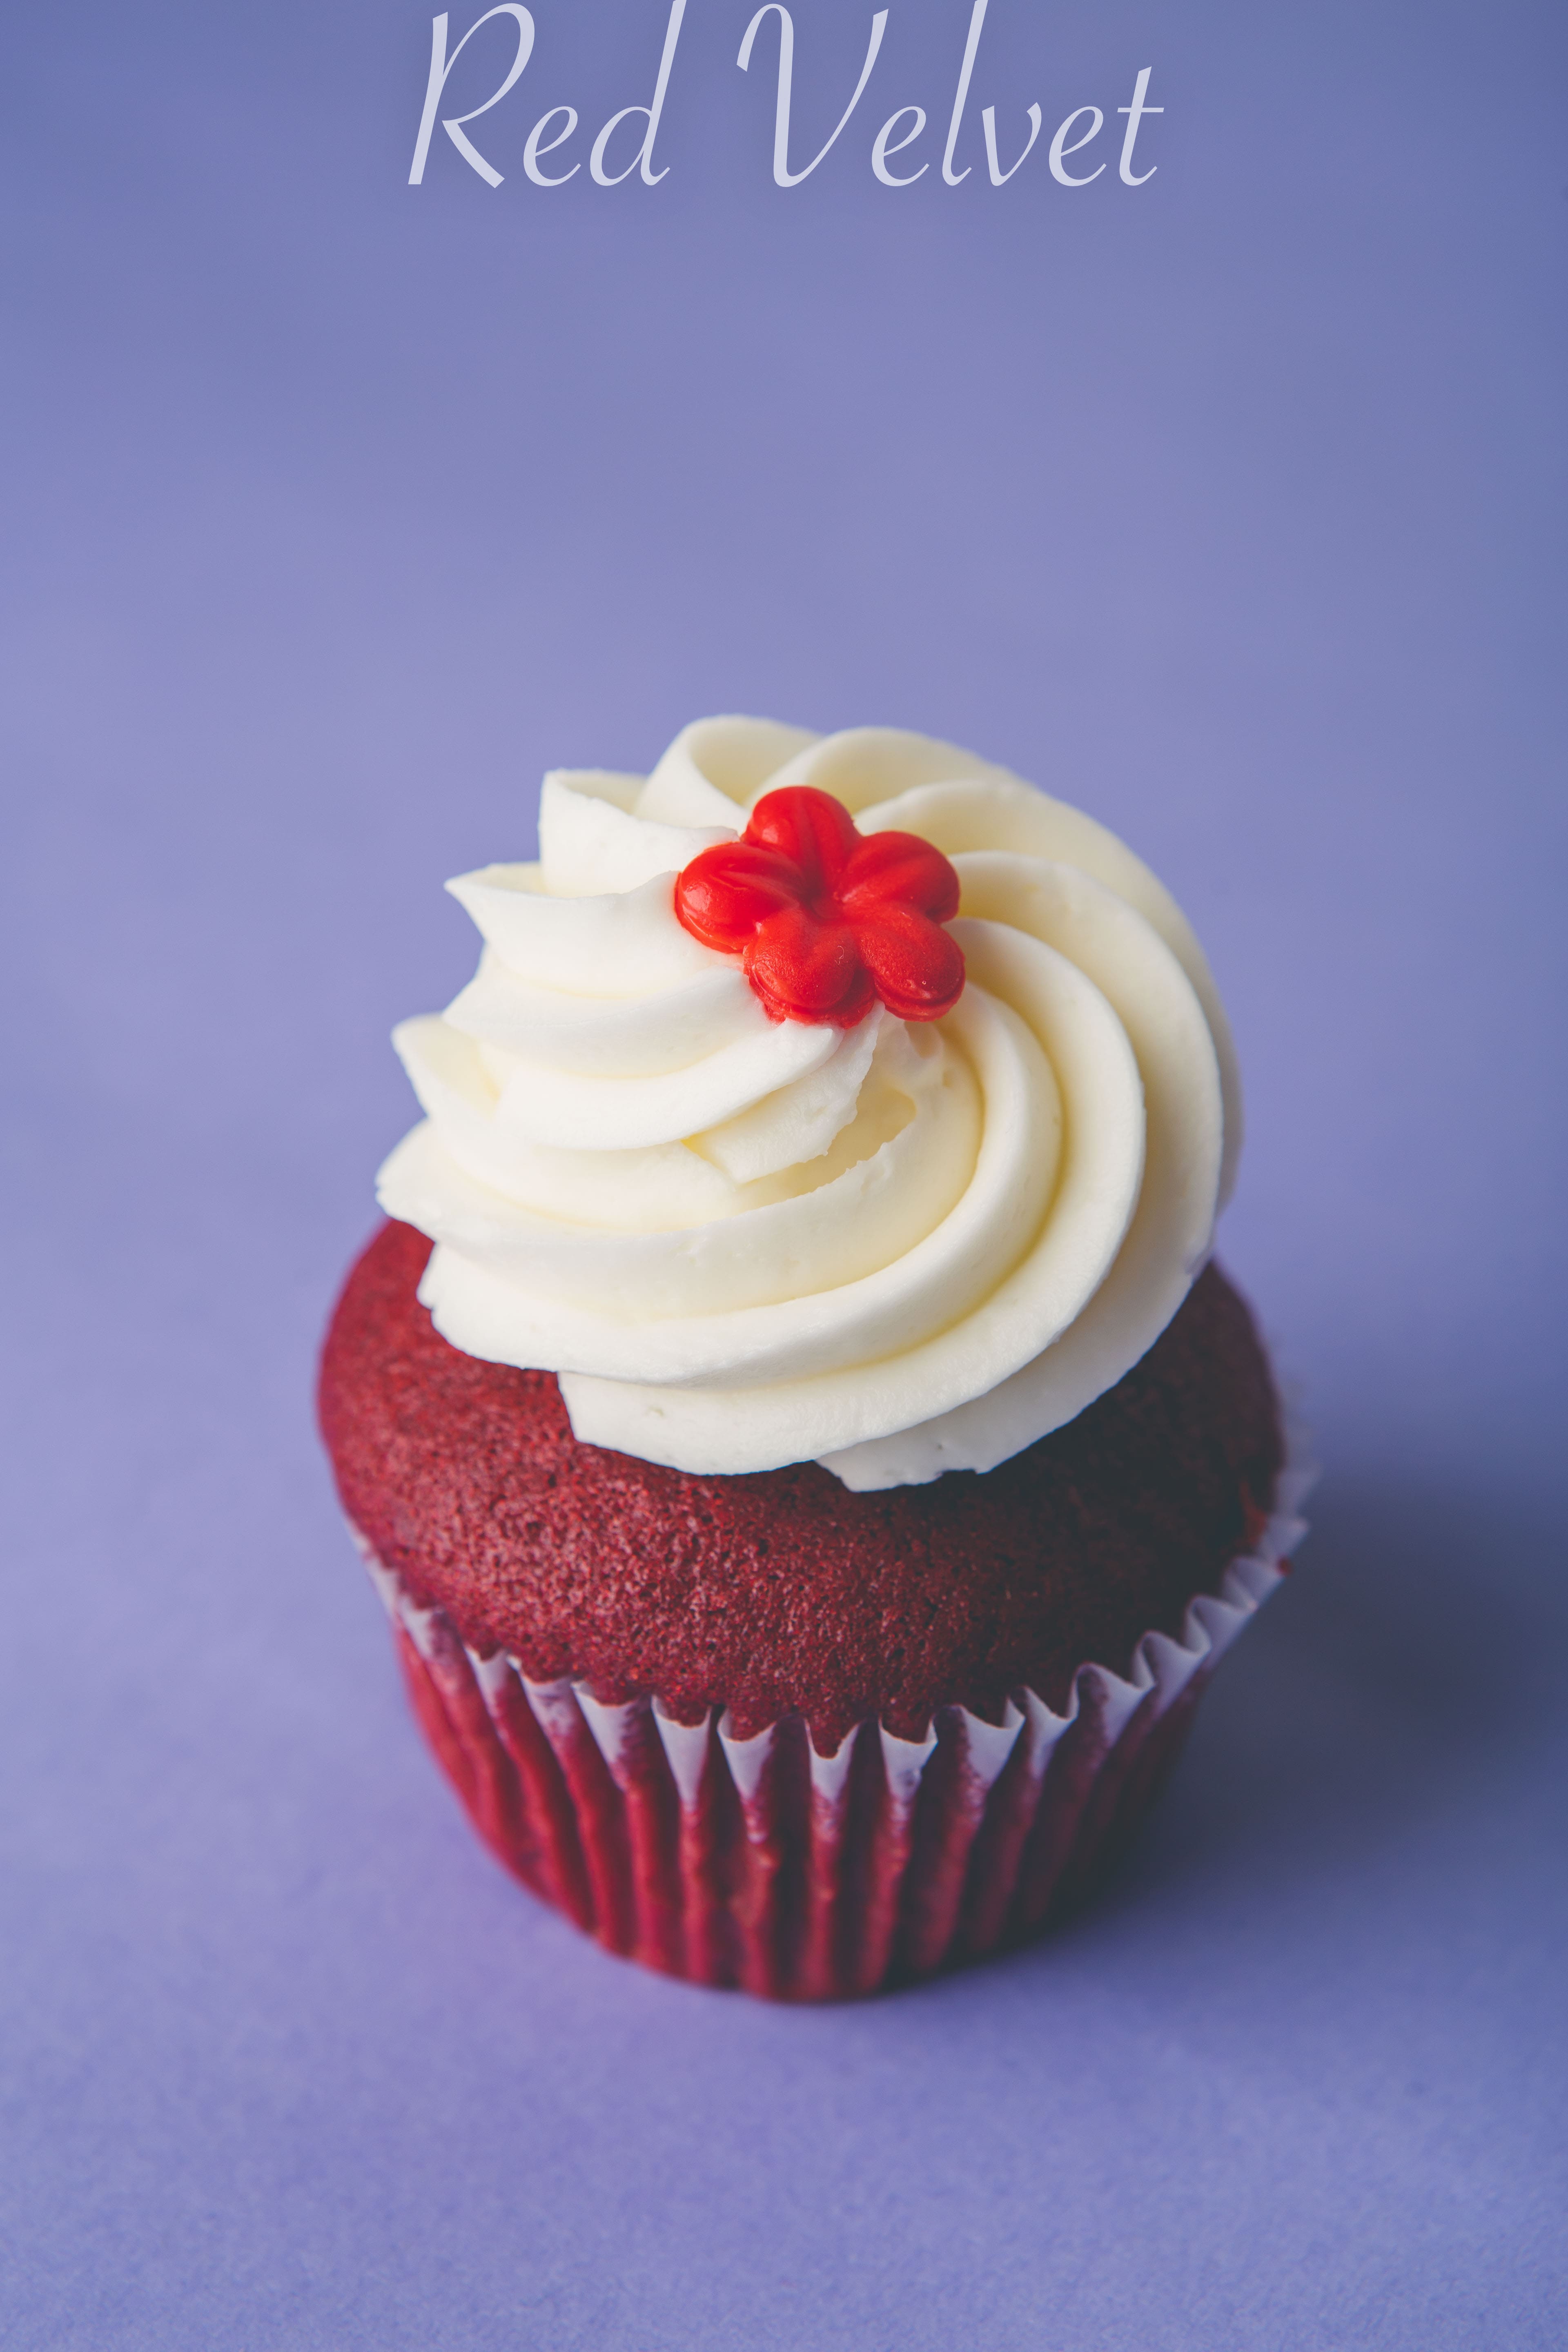 Cupcakes - Red Velvet